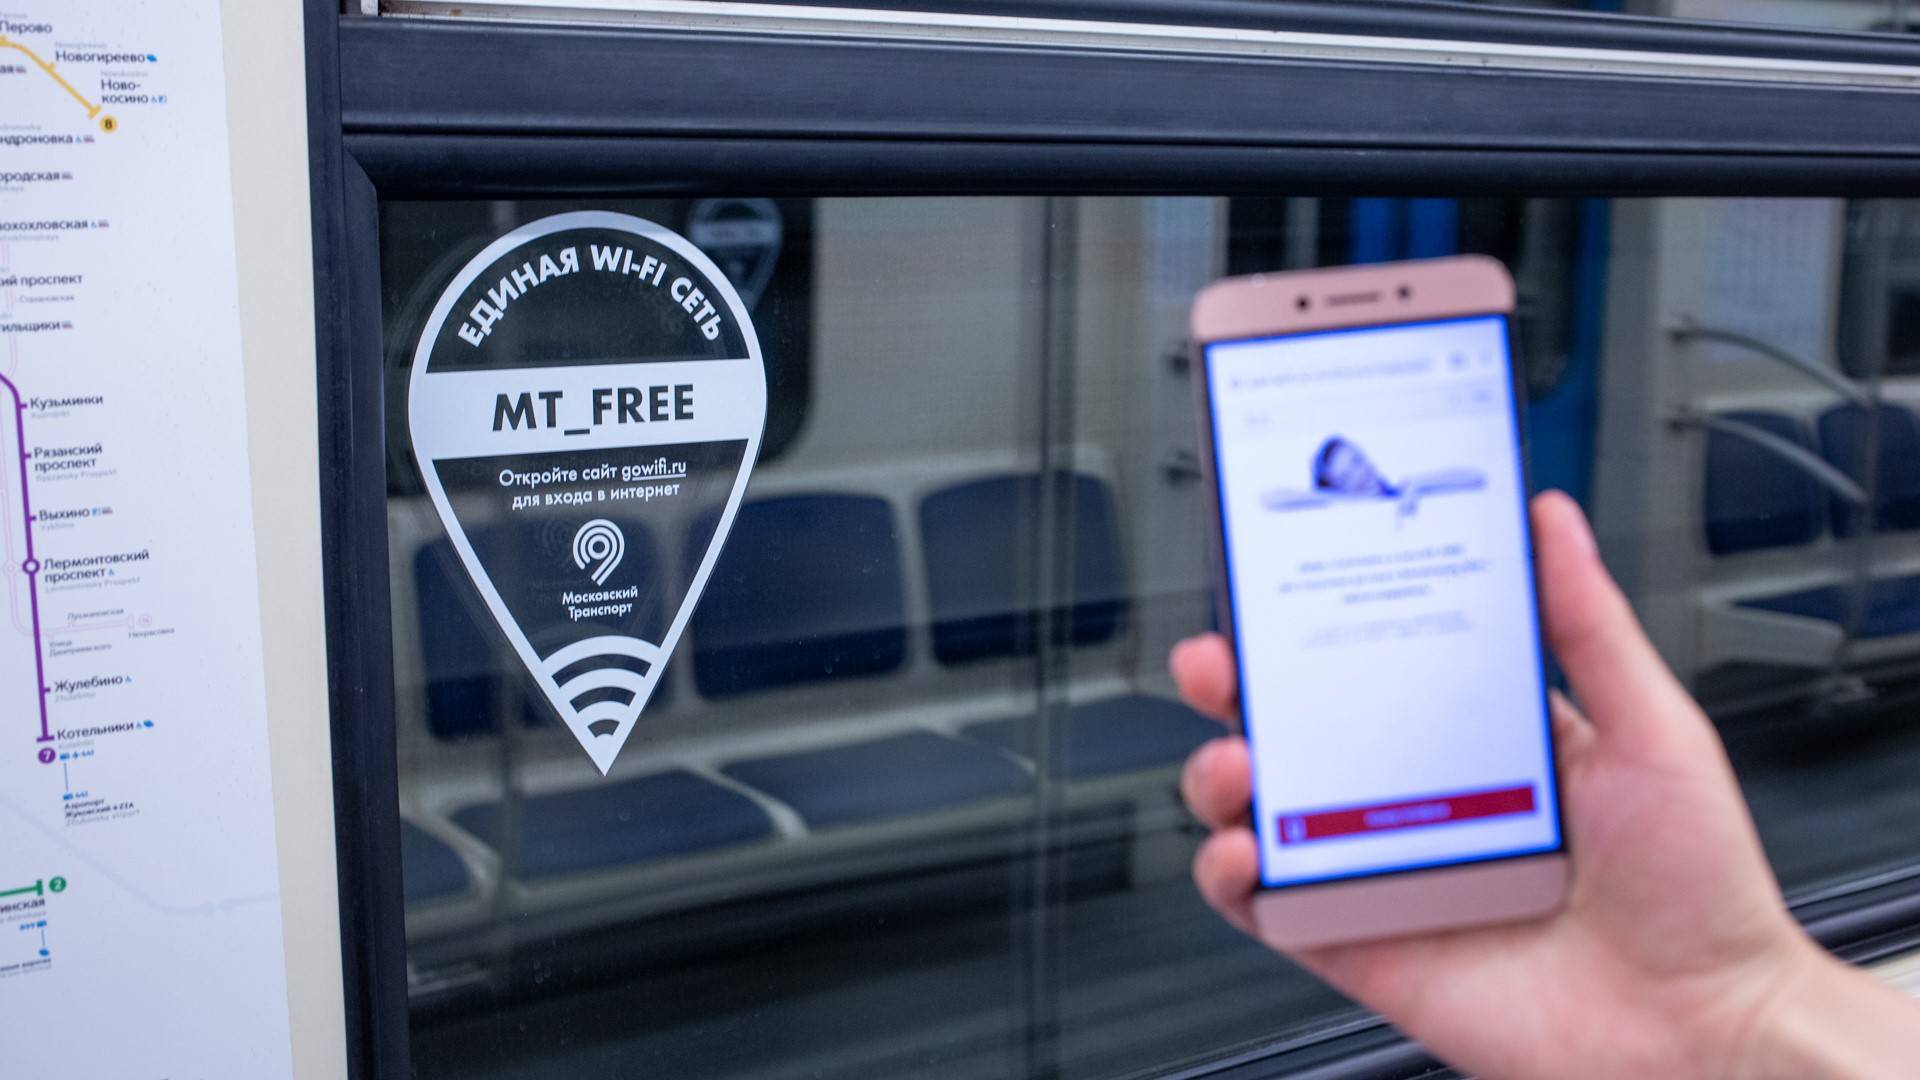 Инструкция про подключение к wi-fi в метро в москве и санкт-петербурге